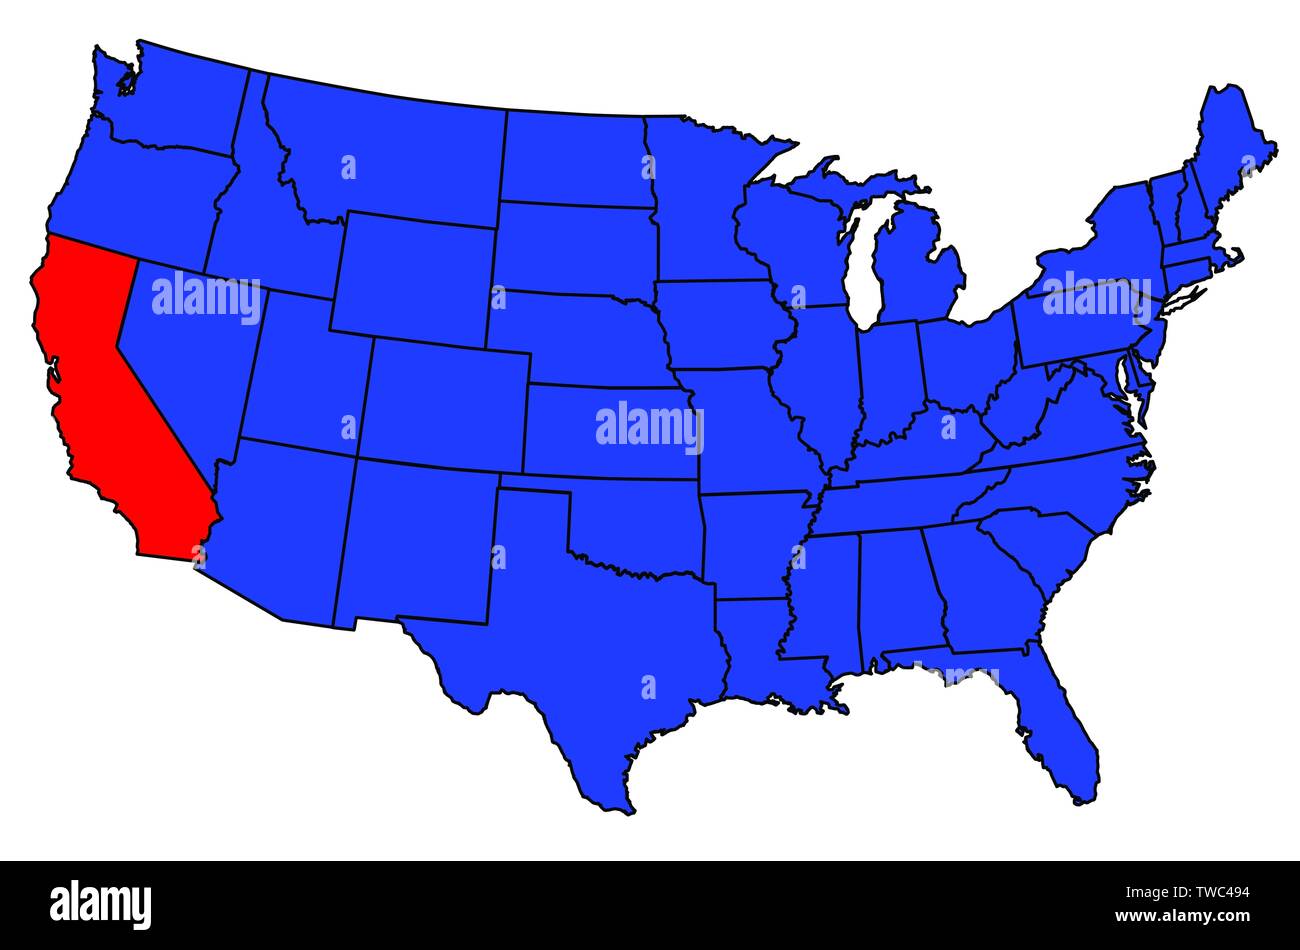 Esquema Del Estado De California En El Recuadro De Un Mapa De Los Ee Uu